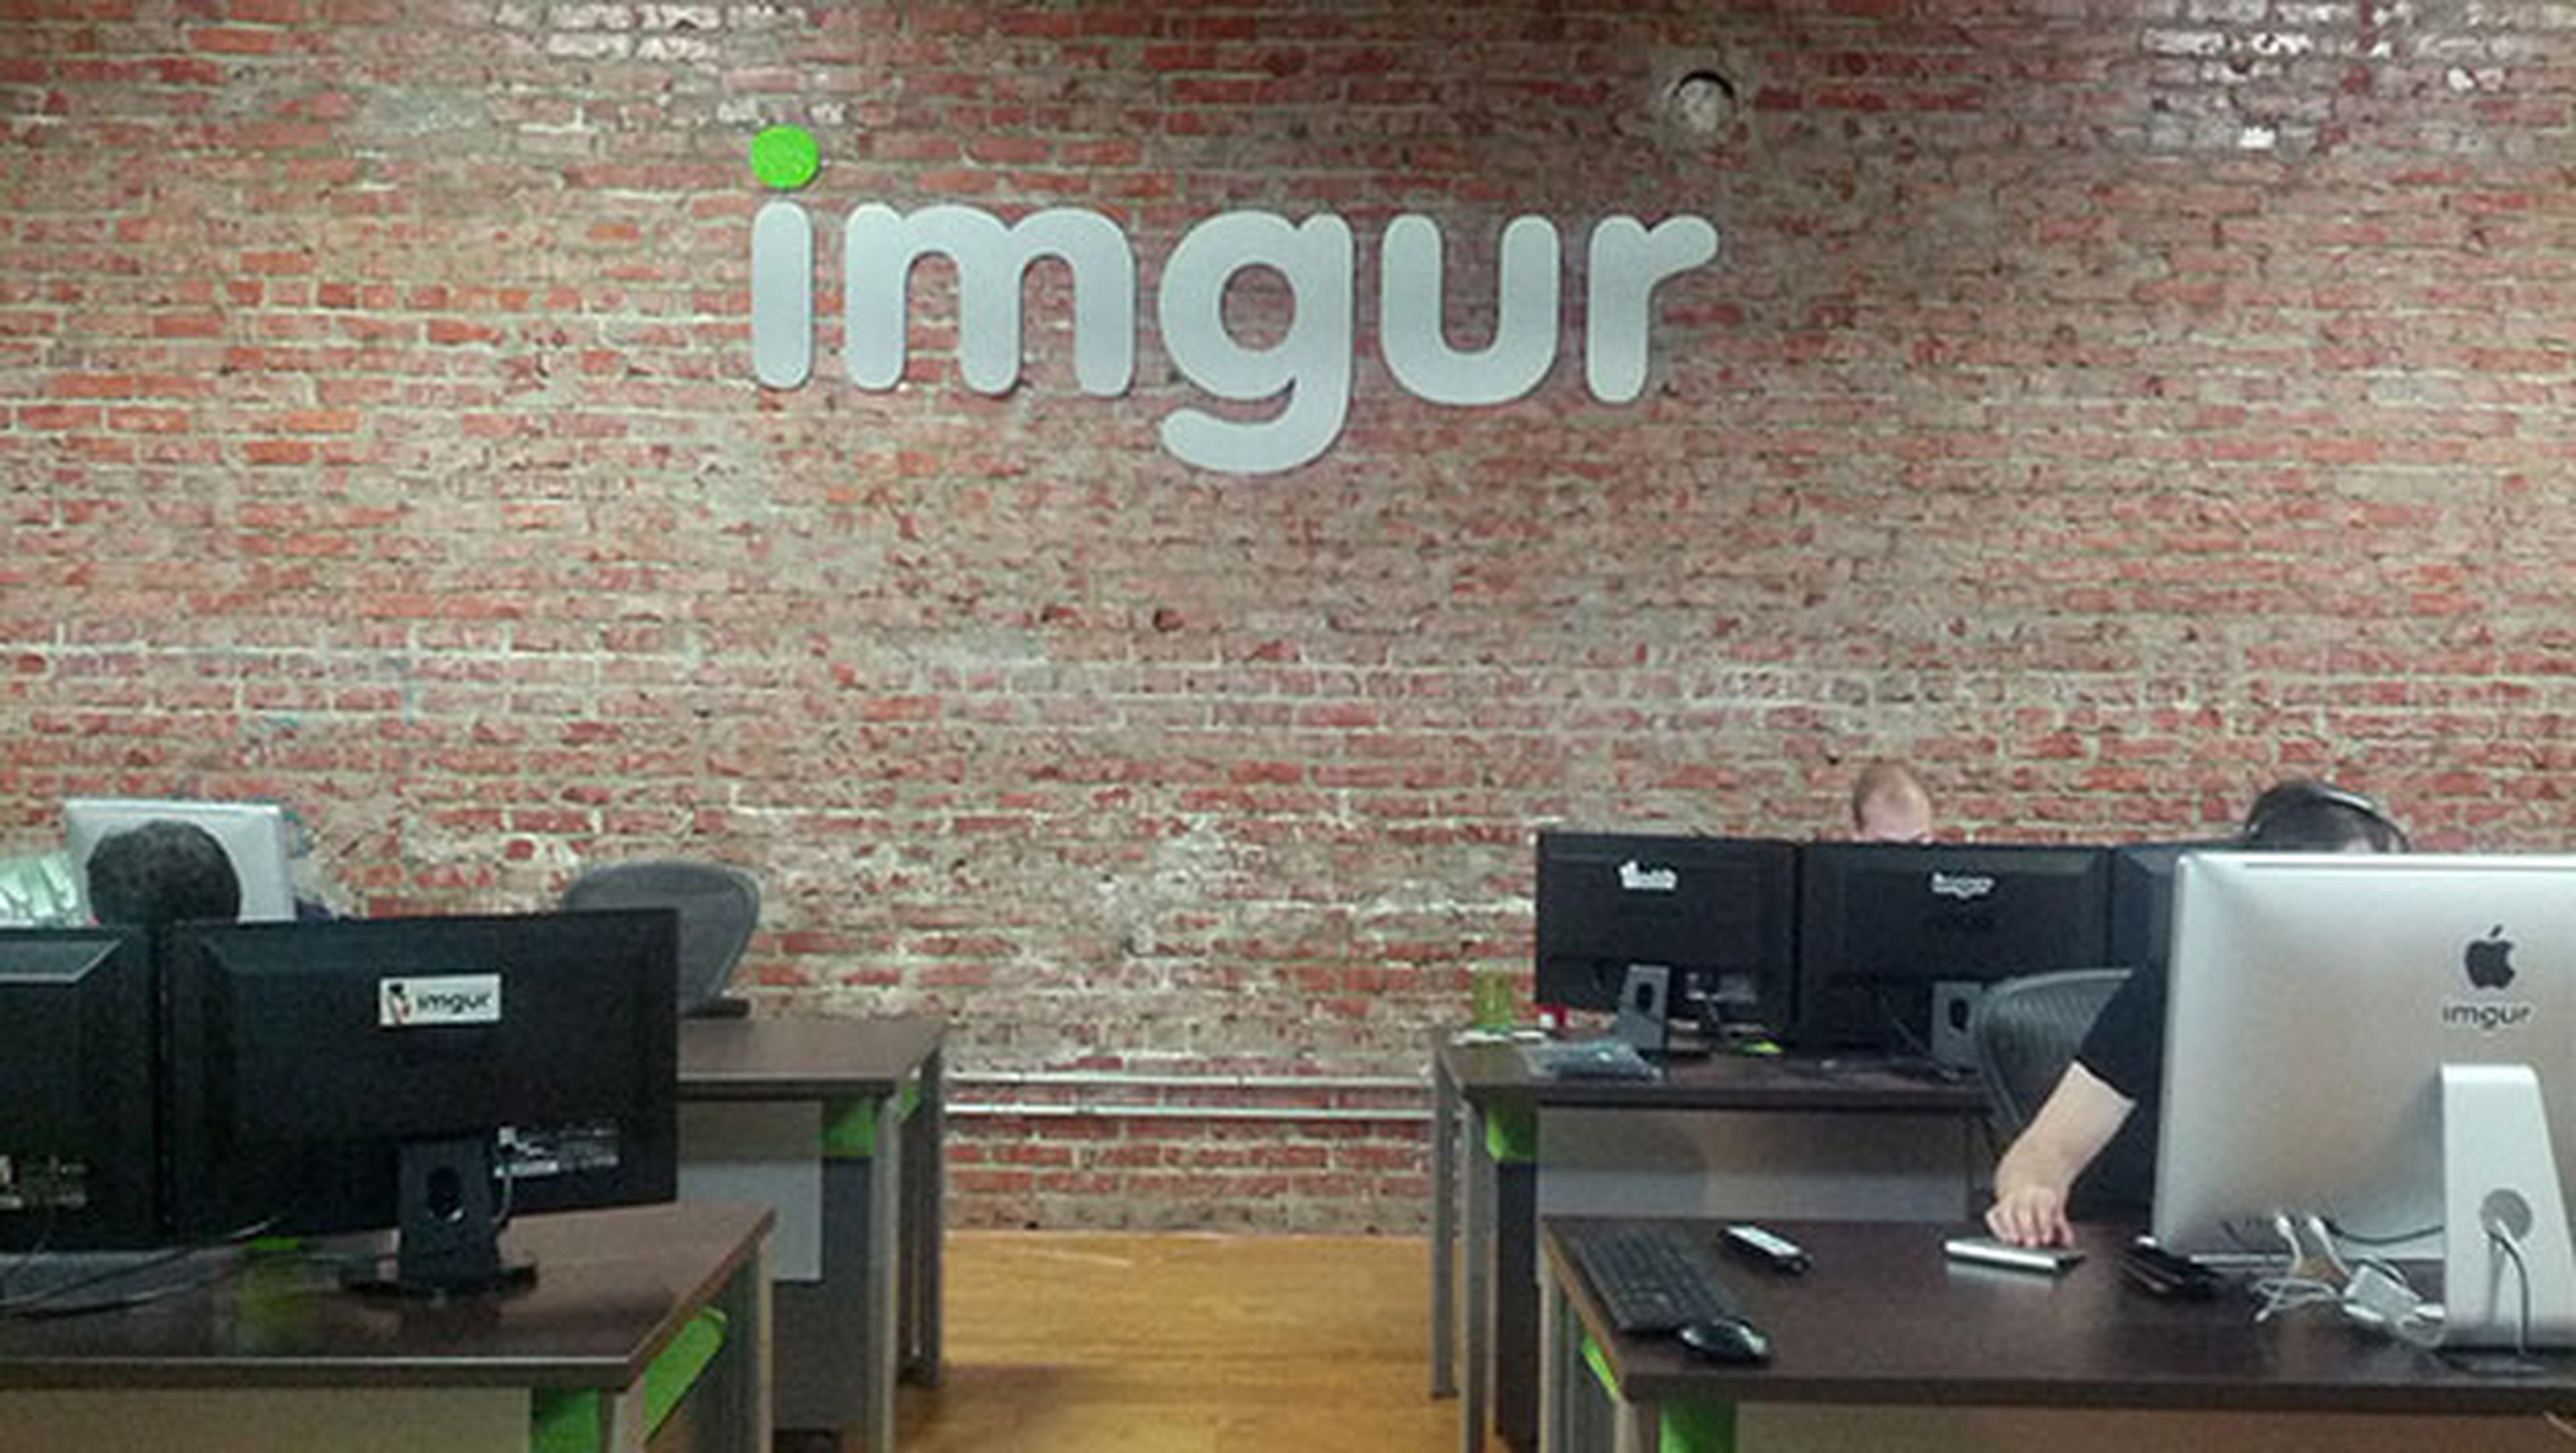 Imgur anuncia un hackeo masivo de 1,7 millones de cuentas